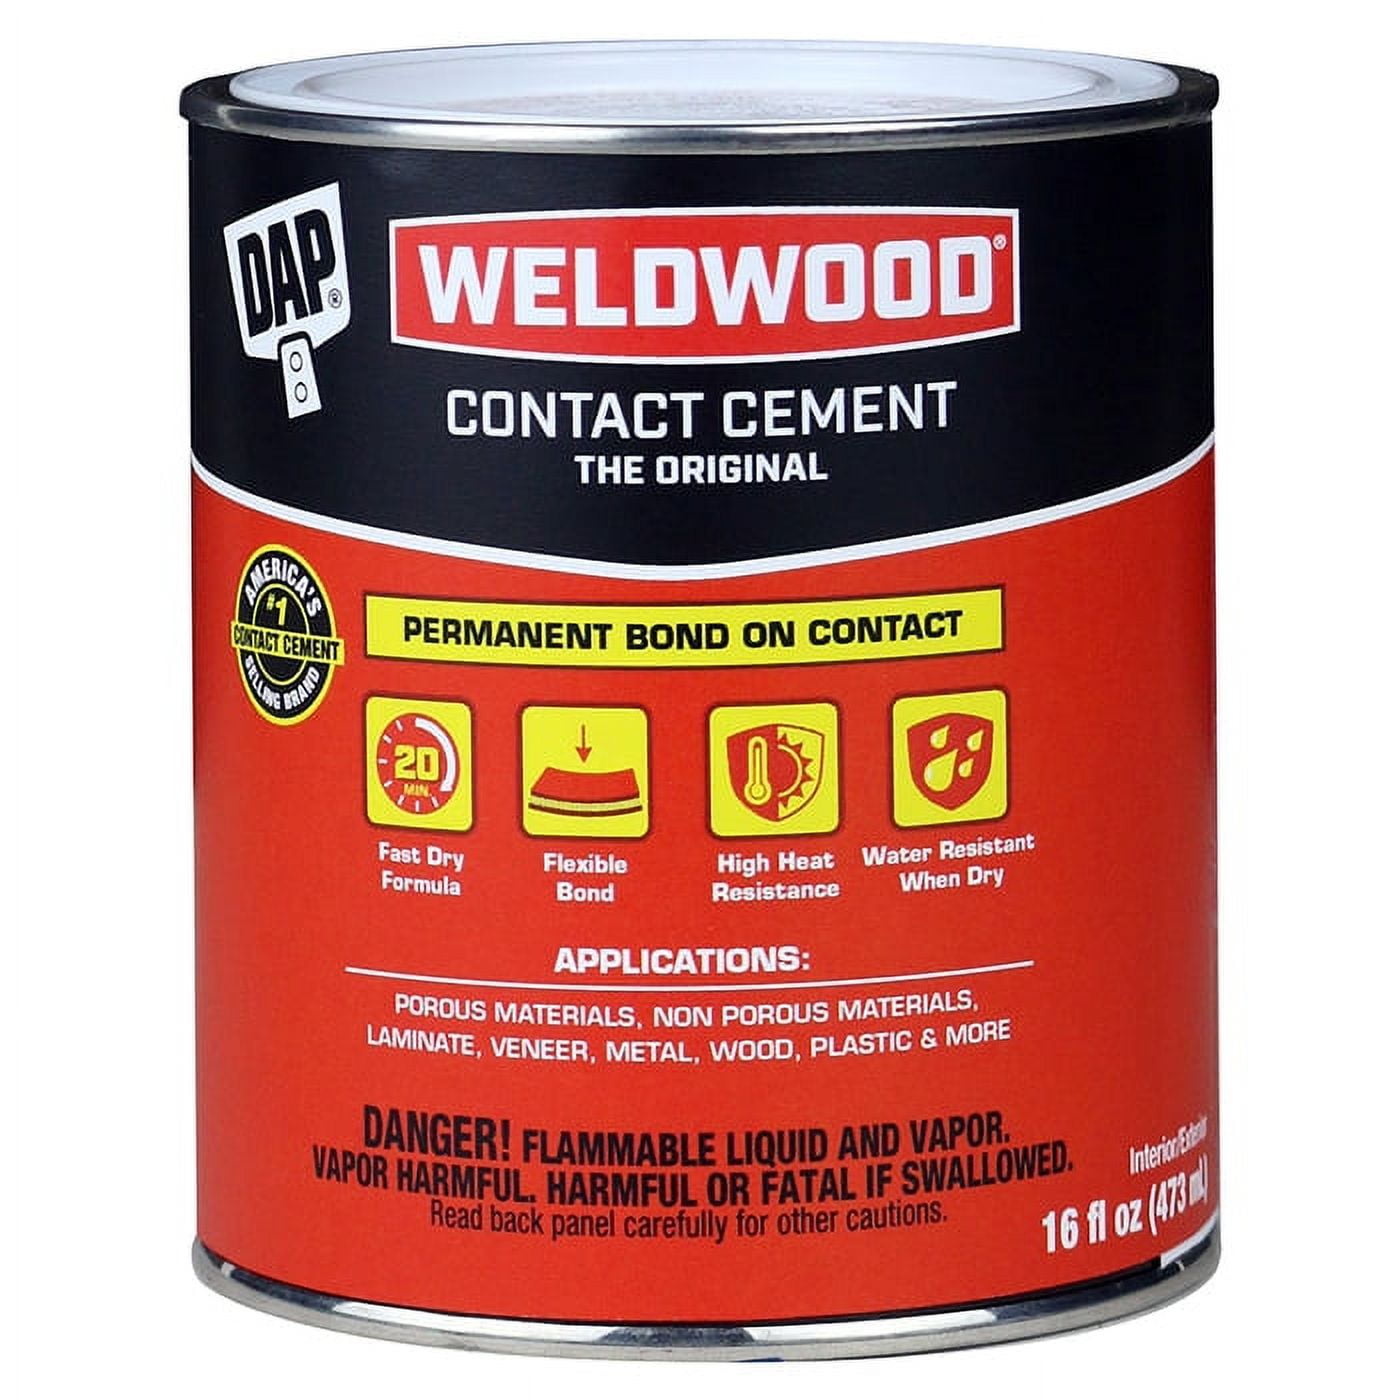 Weldwood 3 fl oz Contact Cement by DAP at Fleet Farm